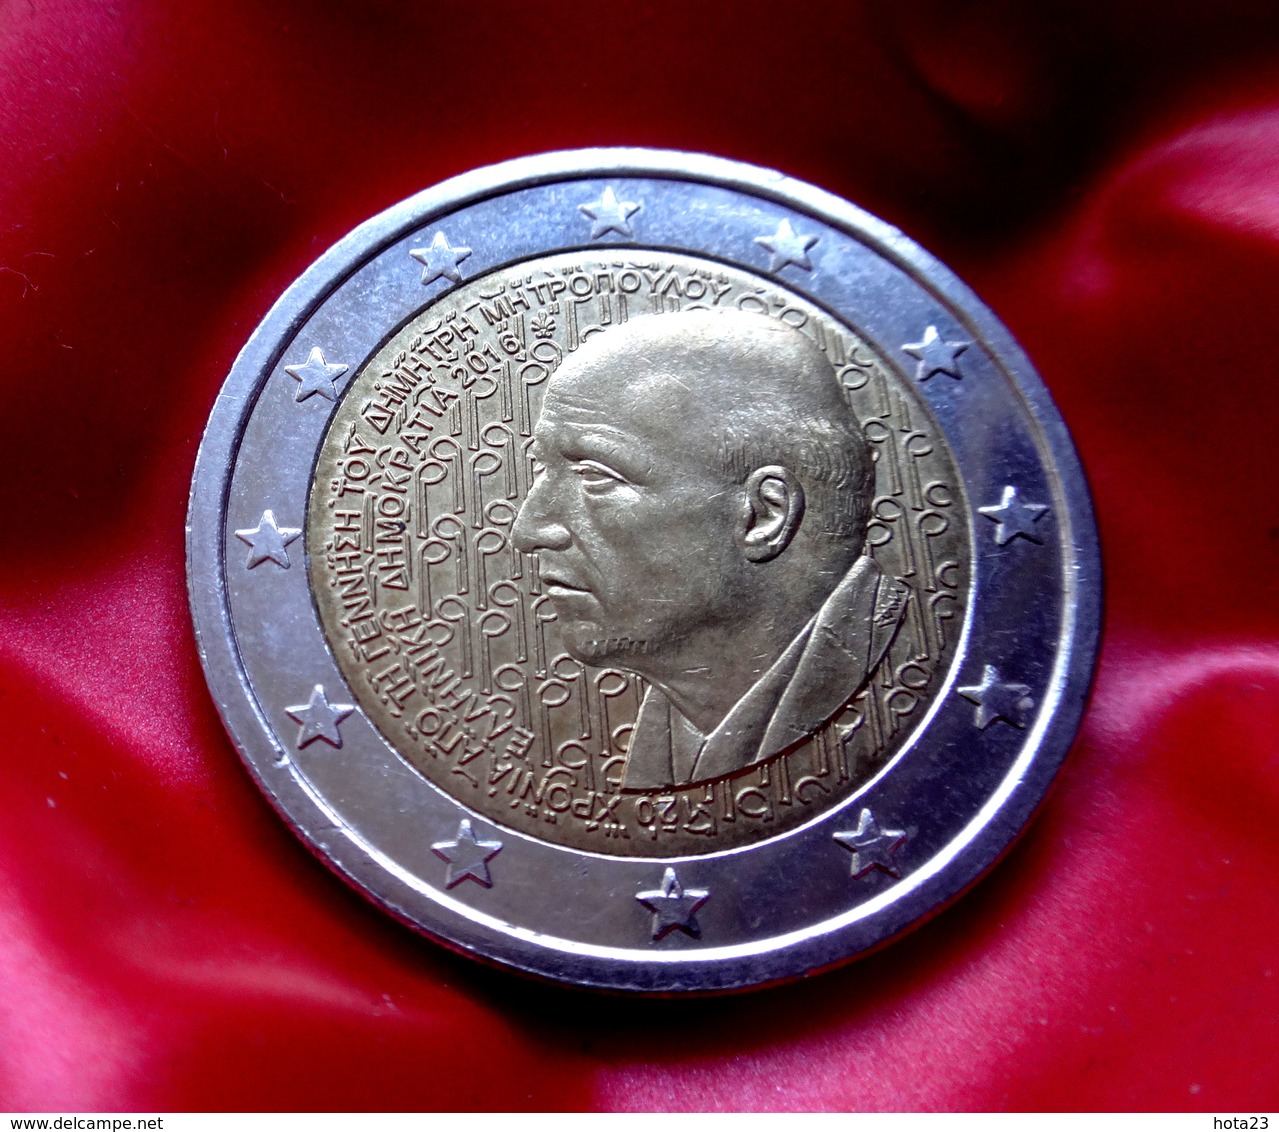 Greece 2016 2€ Euro Bi-metallic Commemorative Coin Dimitris Mitropoulos  Coin  CIRCULATED - Griechenland